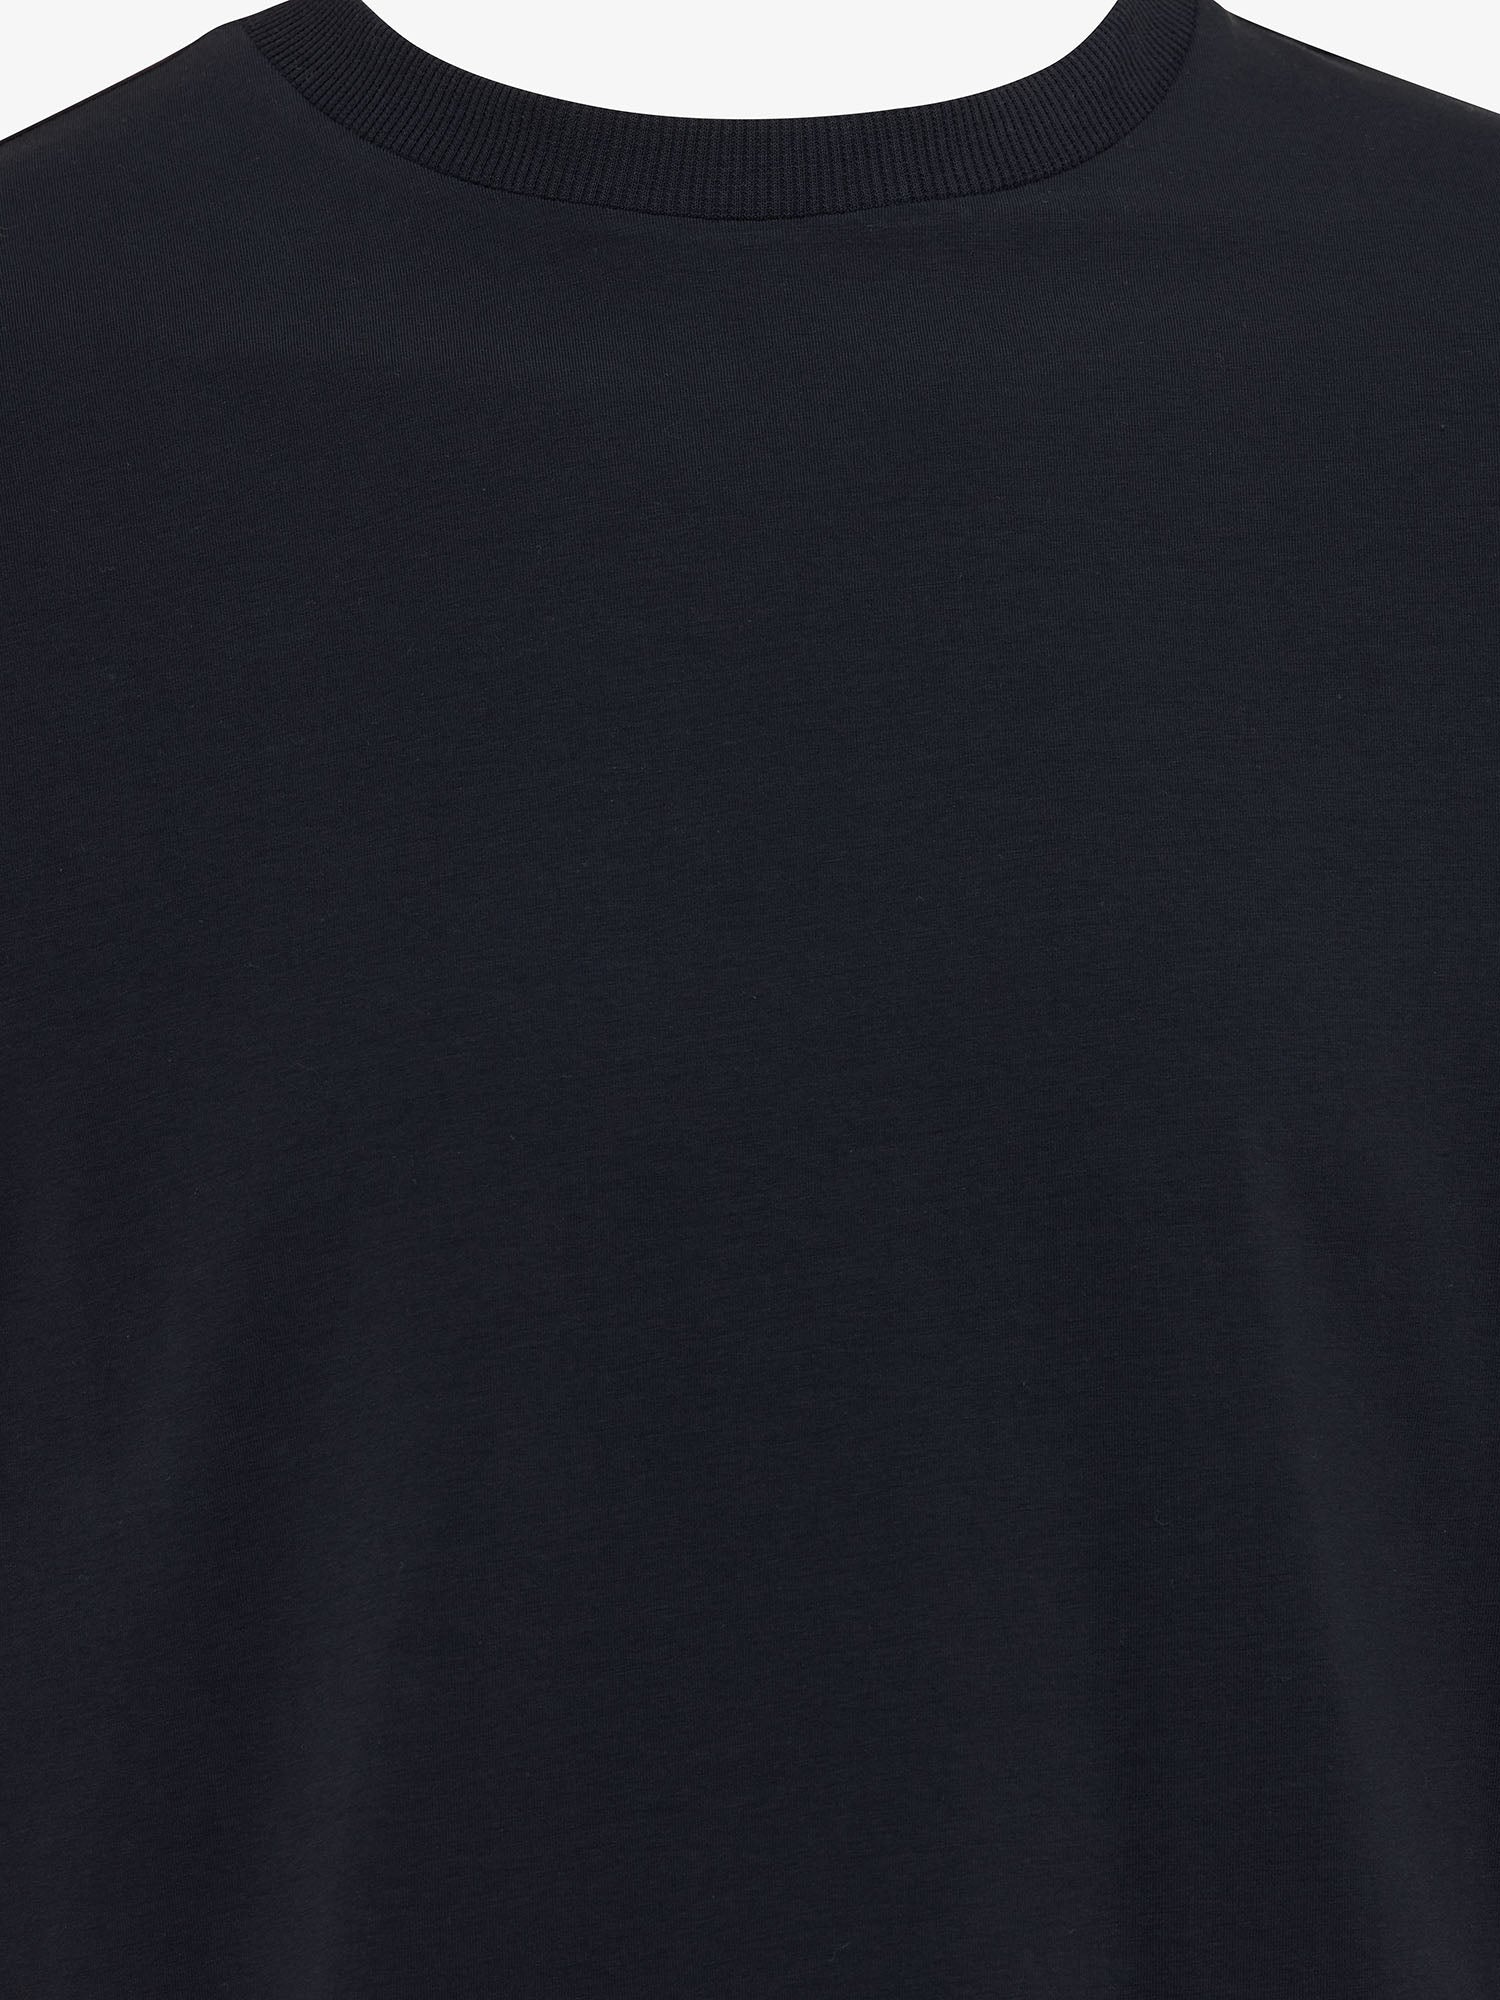 Genti T-shirt - Marine blauw